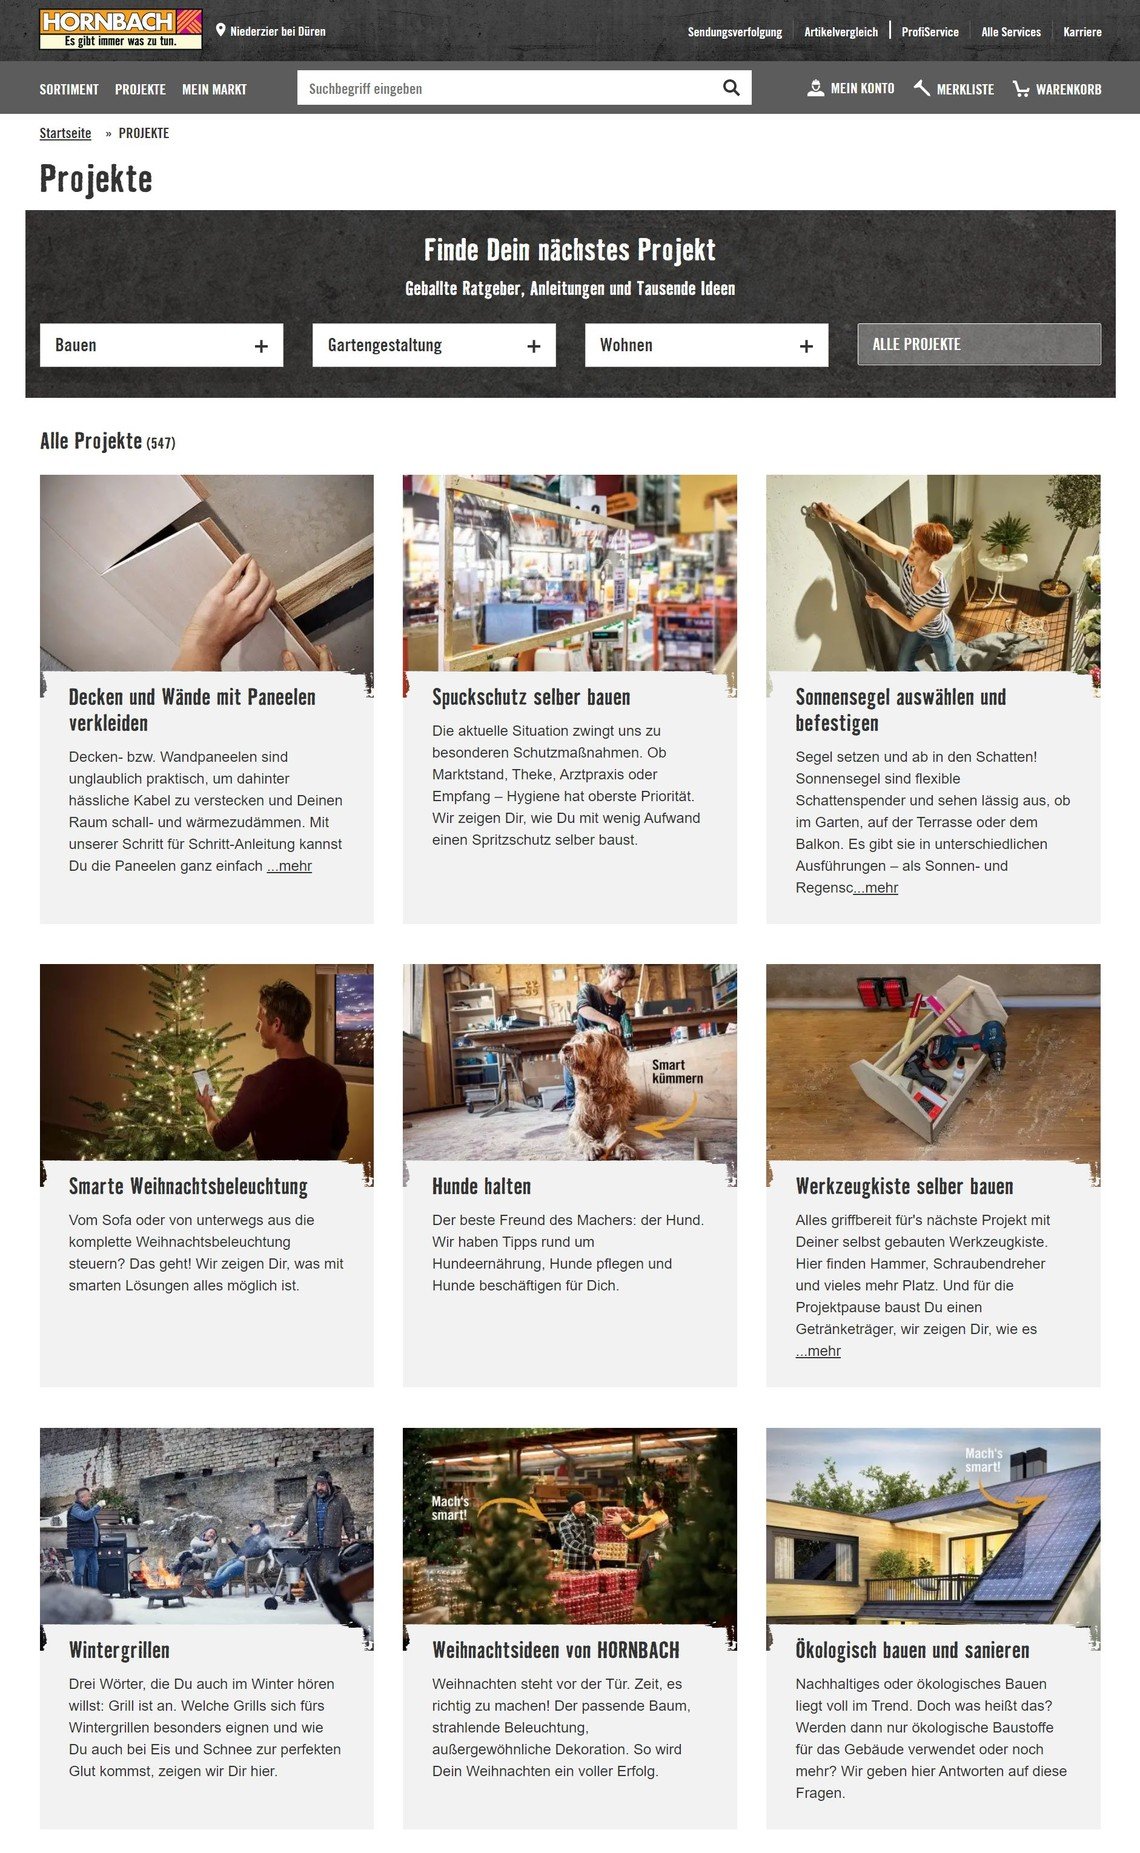 Hornbach: Screenshot der Projekte-Seite mit vielen verschiedenen Themen rund ums Haus